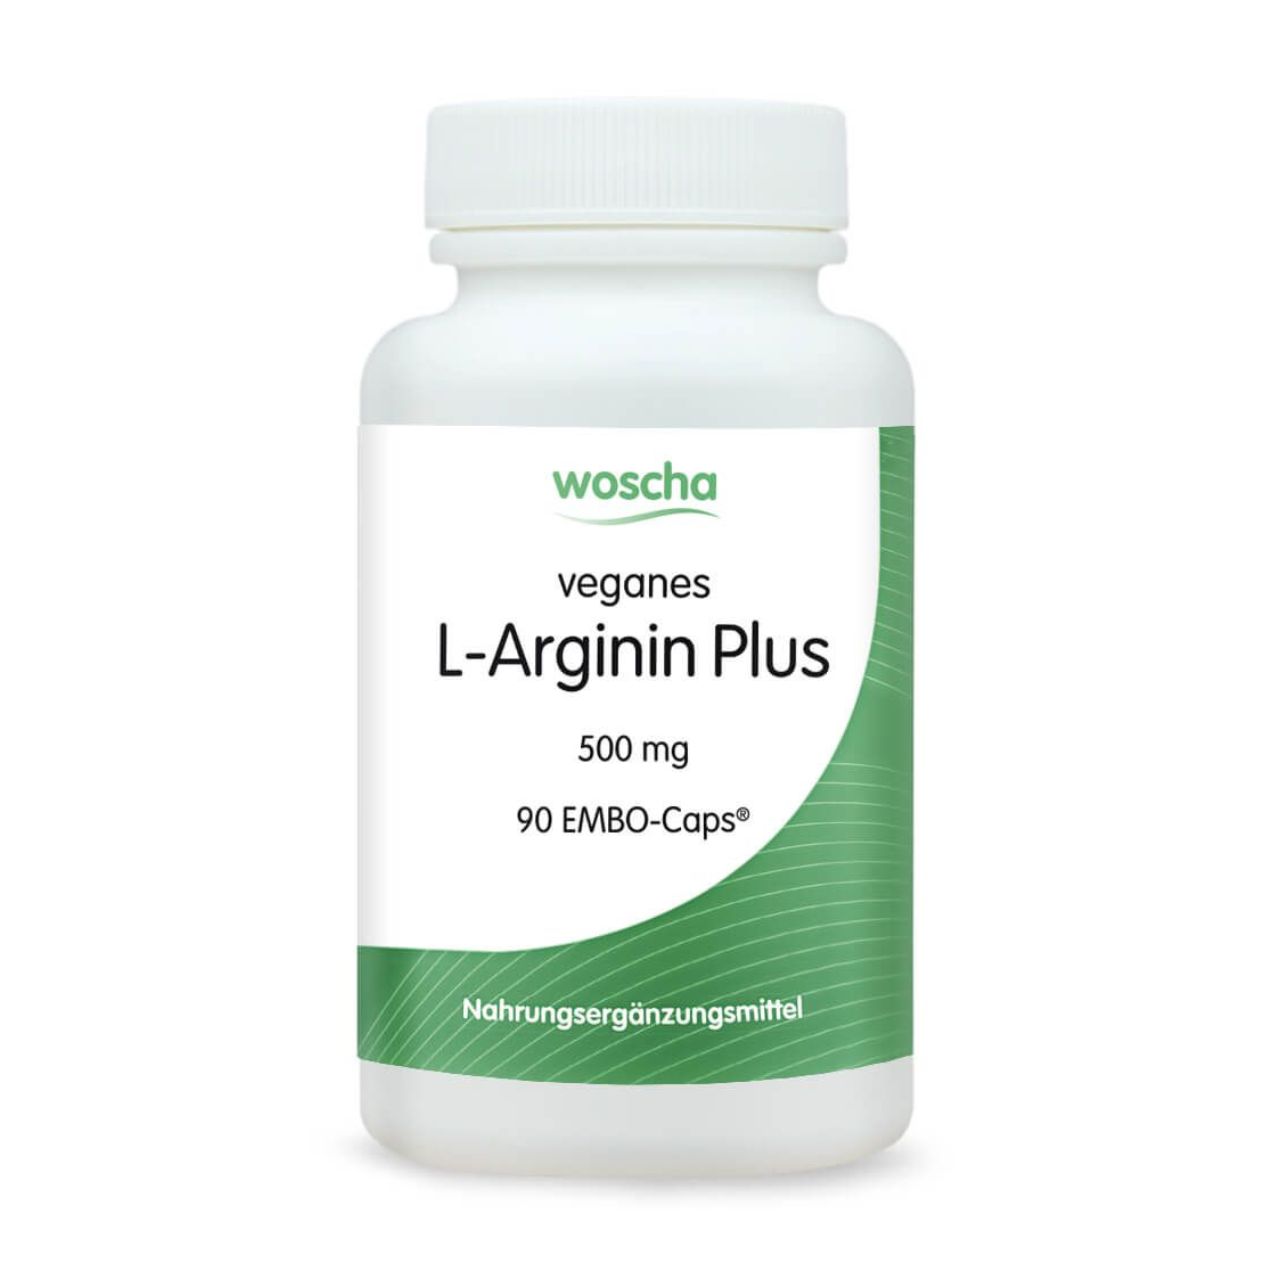 L-Arginin Plus, 90 EMBO-Caps